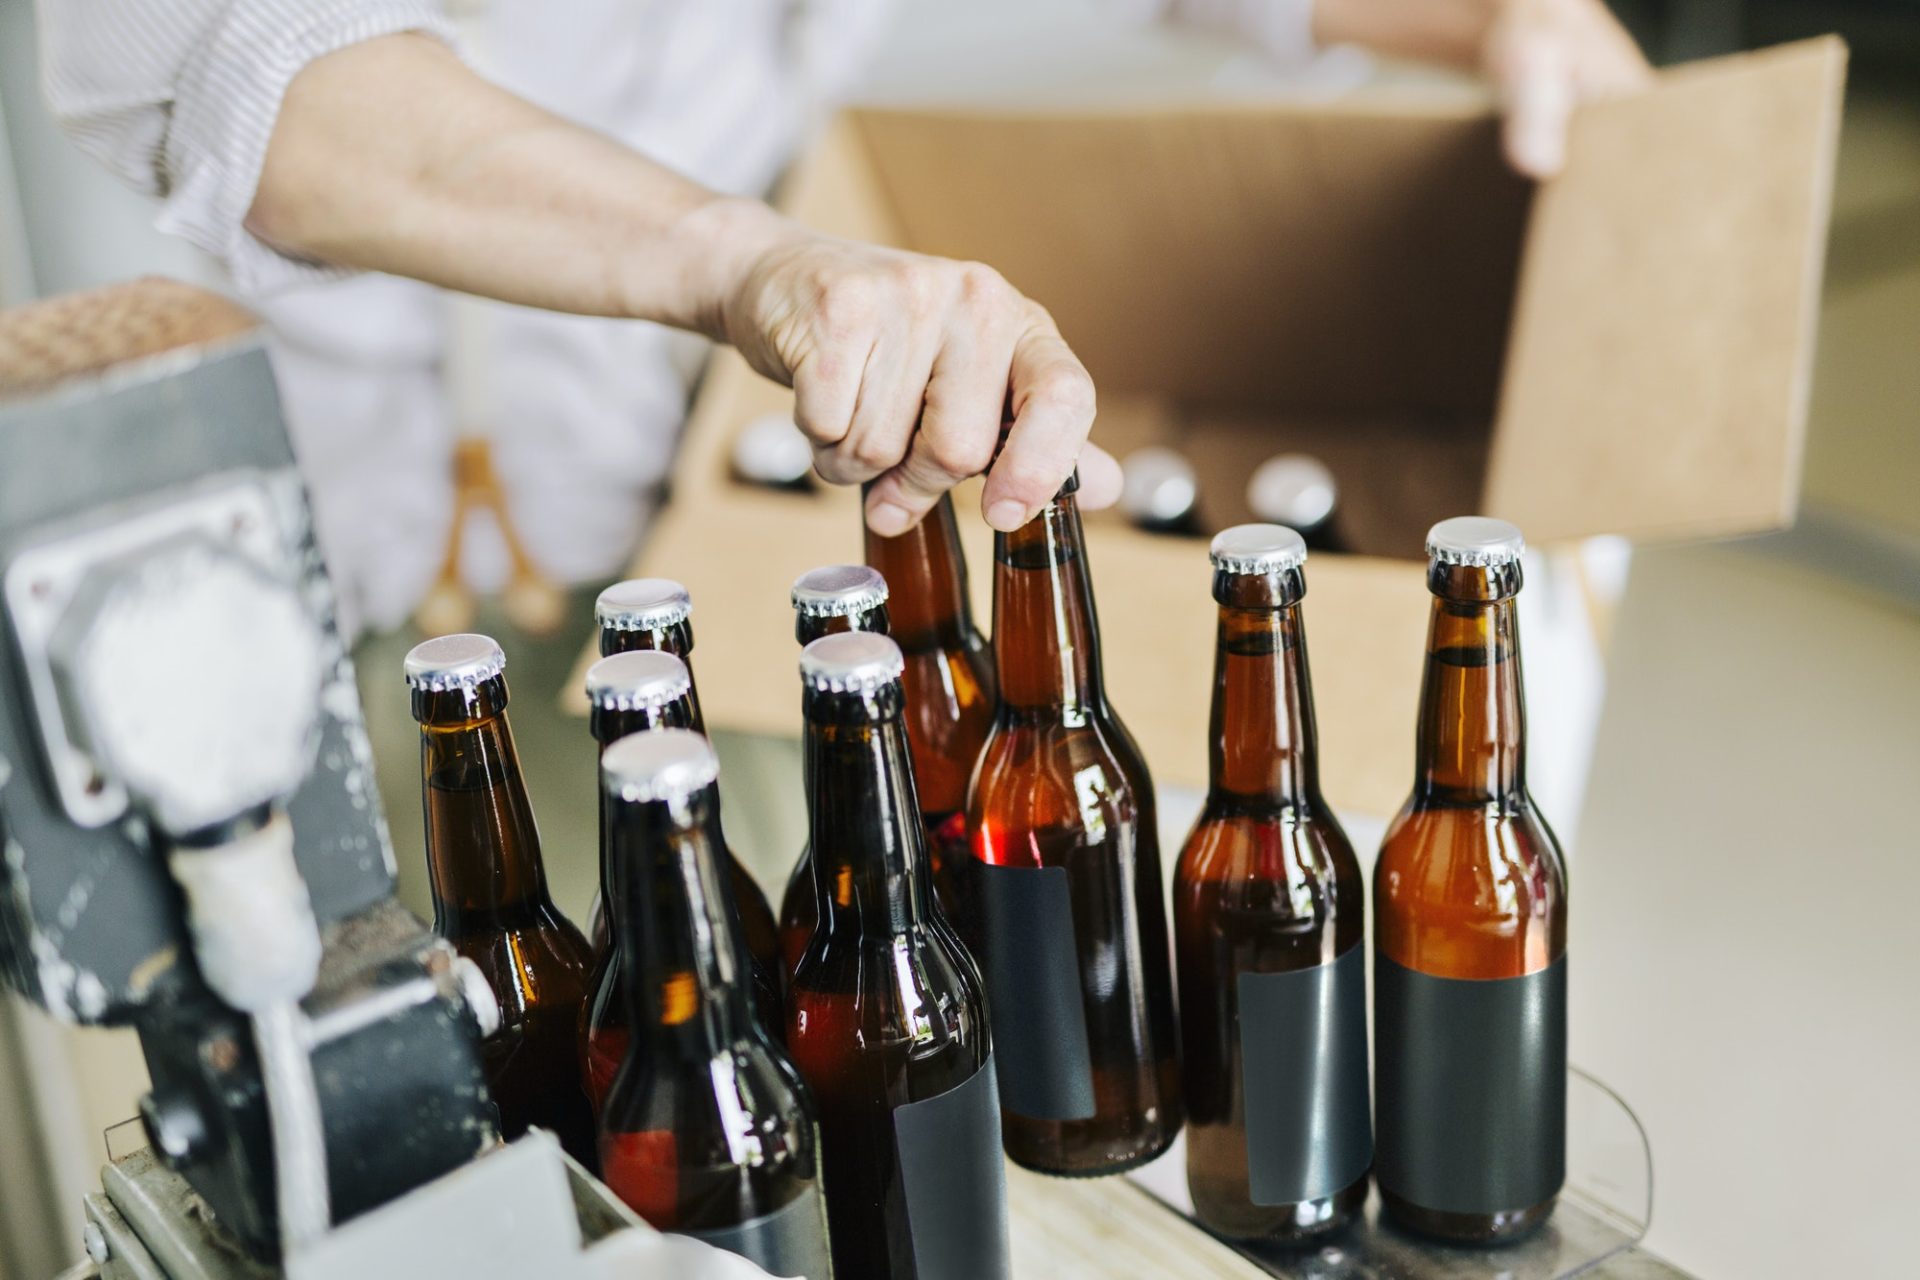 Brewery worker preparing beer bottles